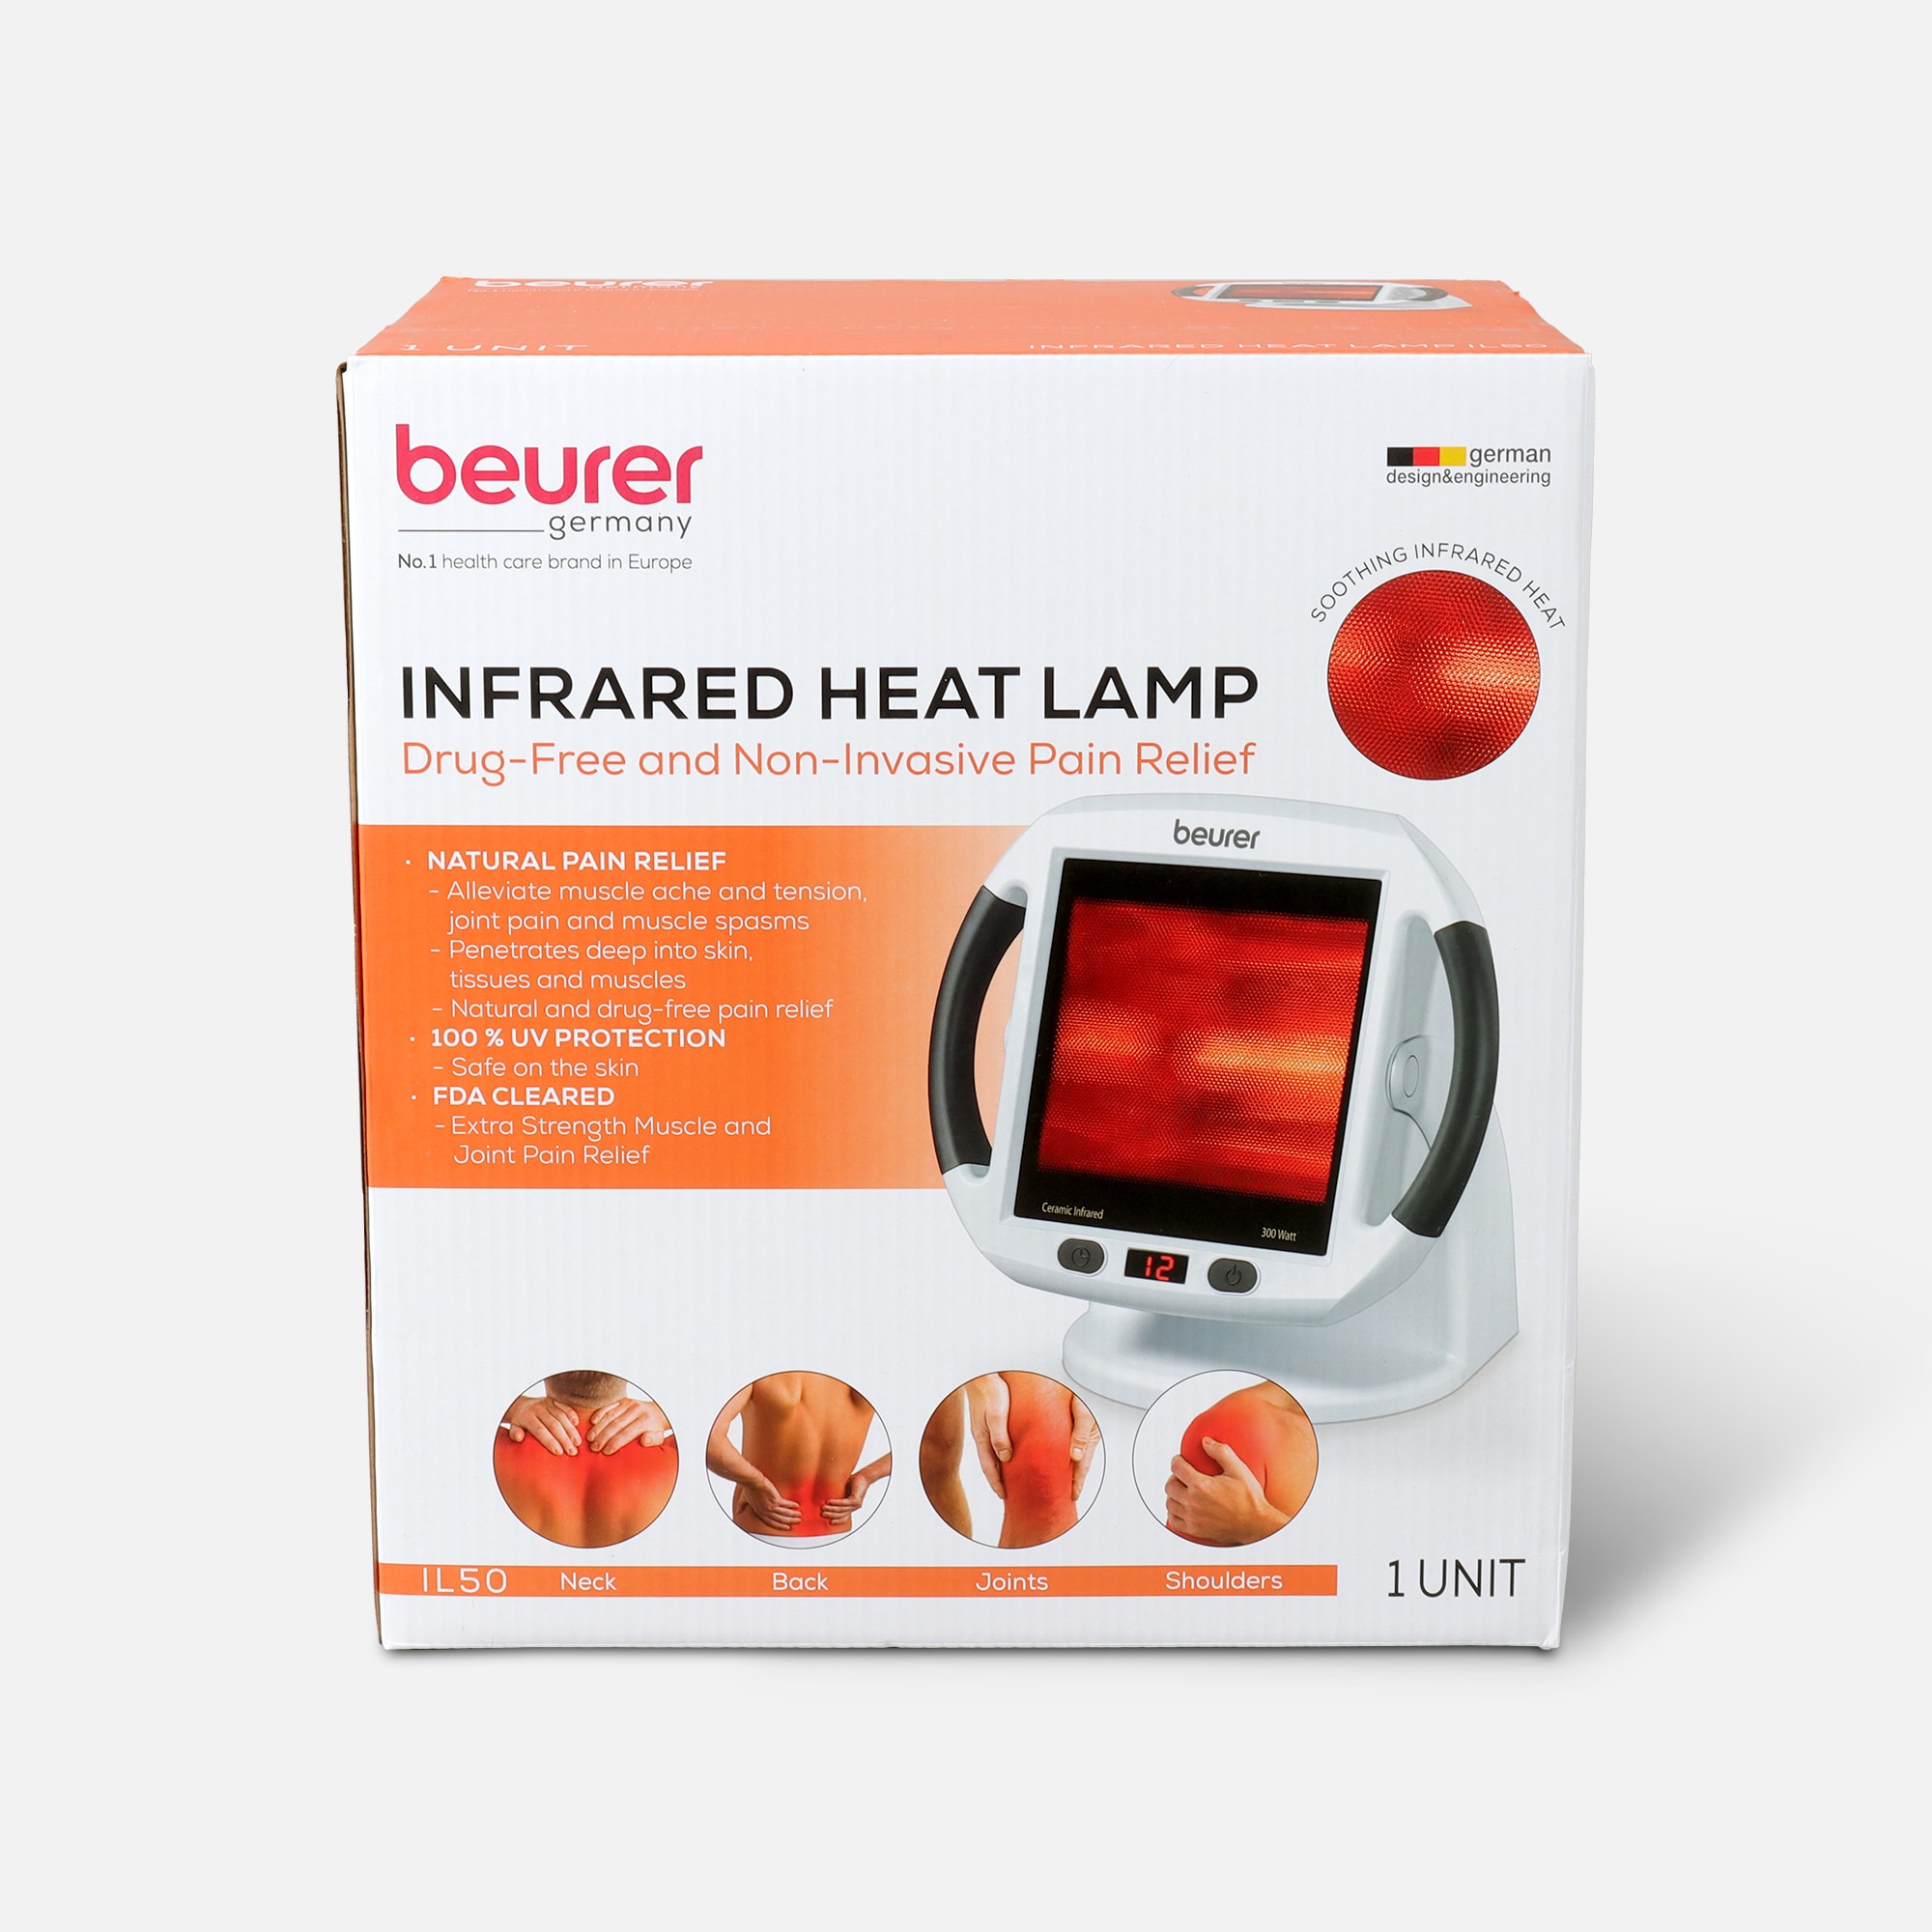 Kalksten Ret det tvivler jeg på Beurer Pain Relief Infrared Red Light Heat Lamp